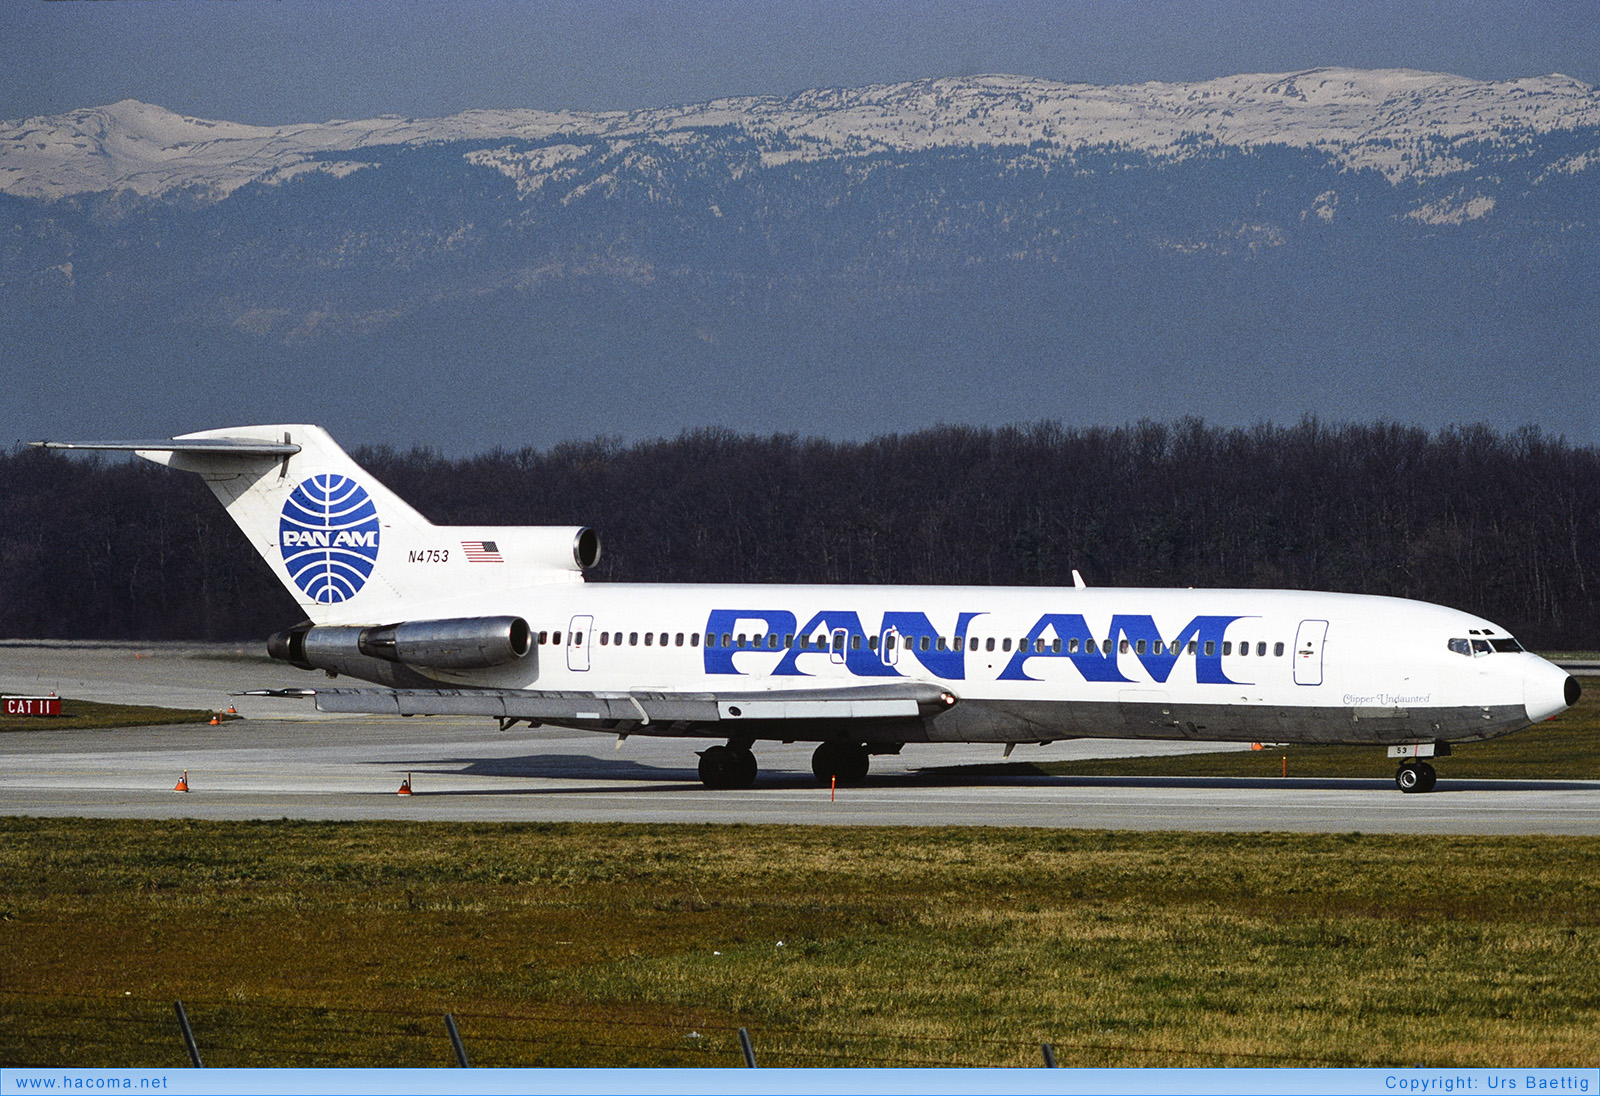 Photo of N4753 - Pan Am Clipper Undaunted - Geneva Airport - 1989